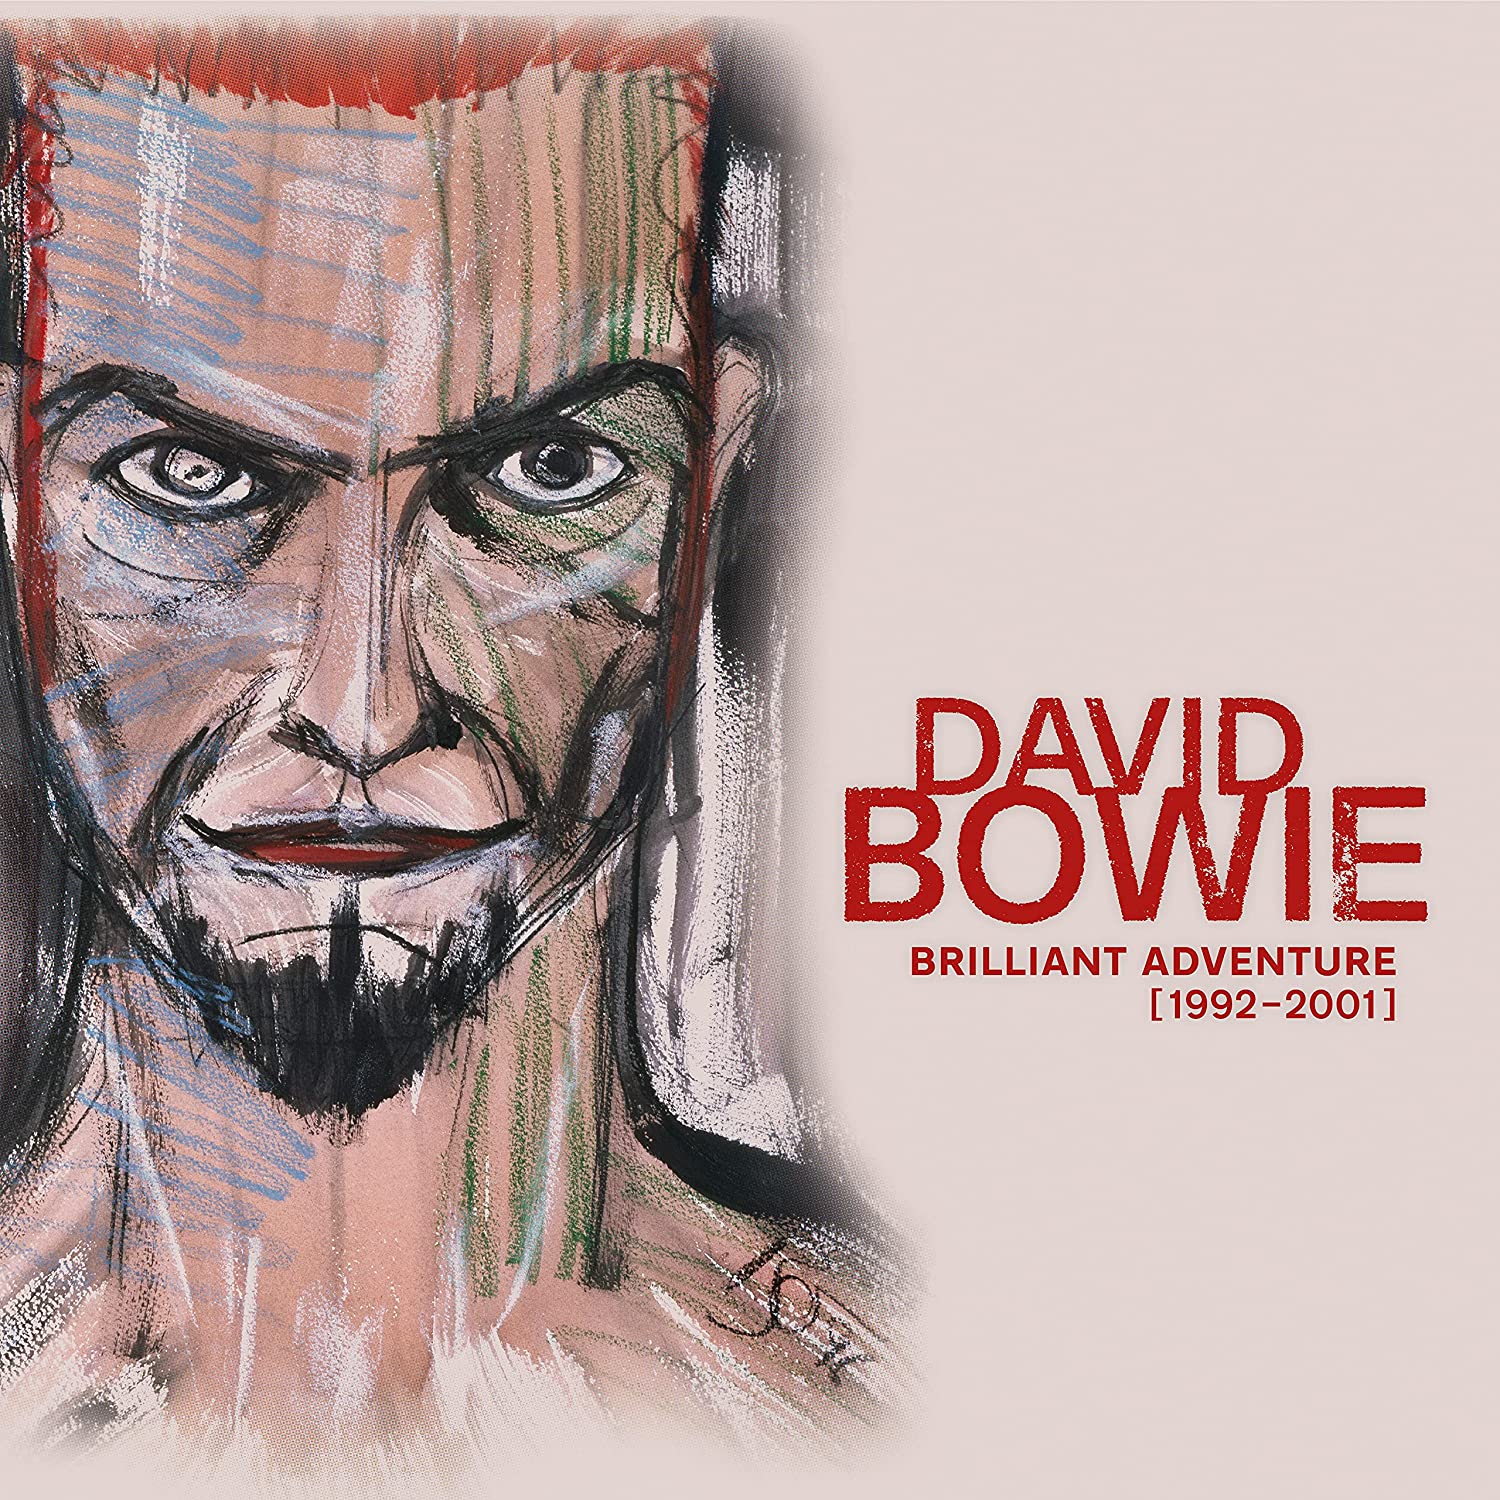 David Bowie / Brilliant Adventure [1992-2001] 18LP vinyl box set